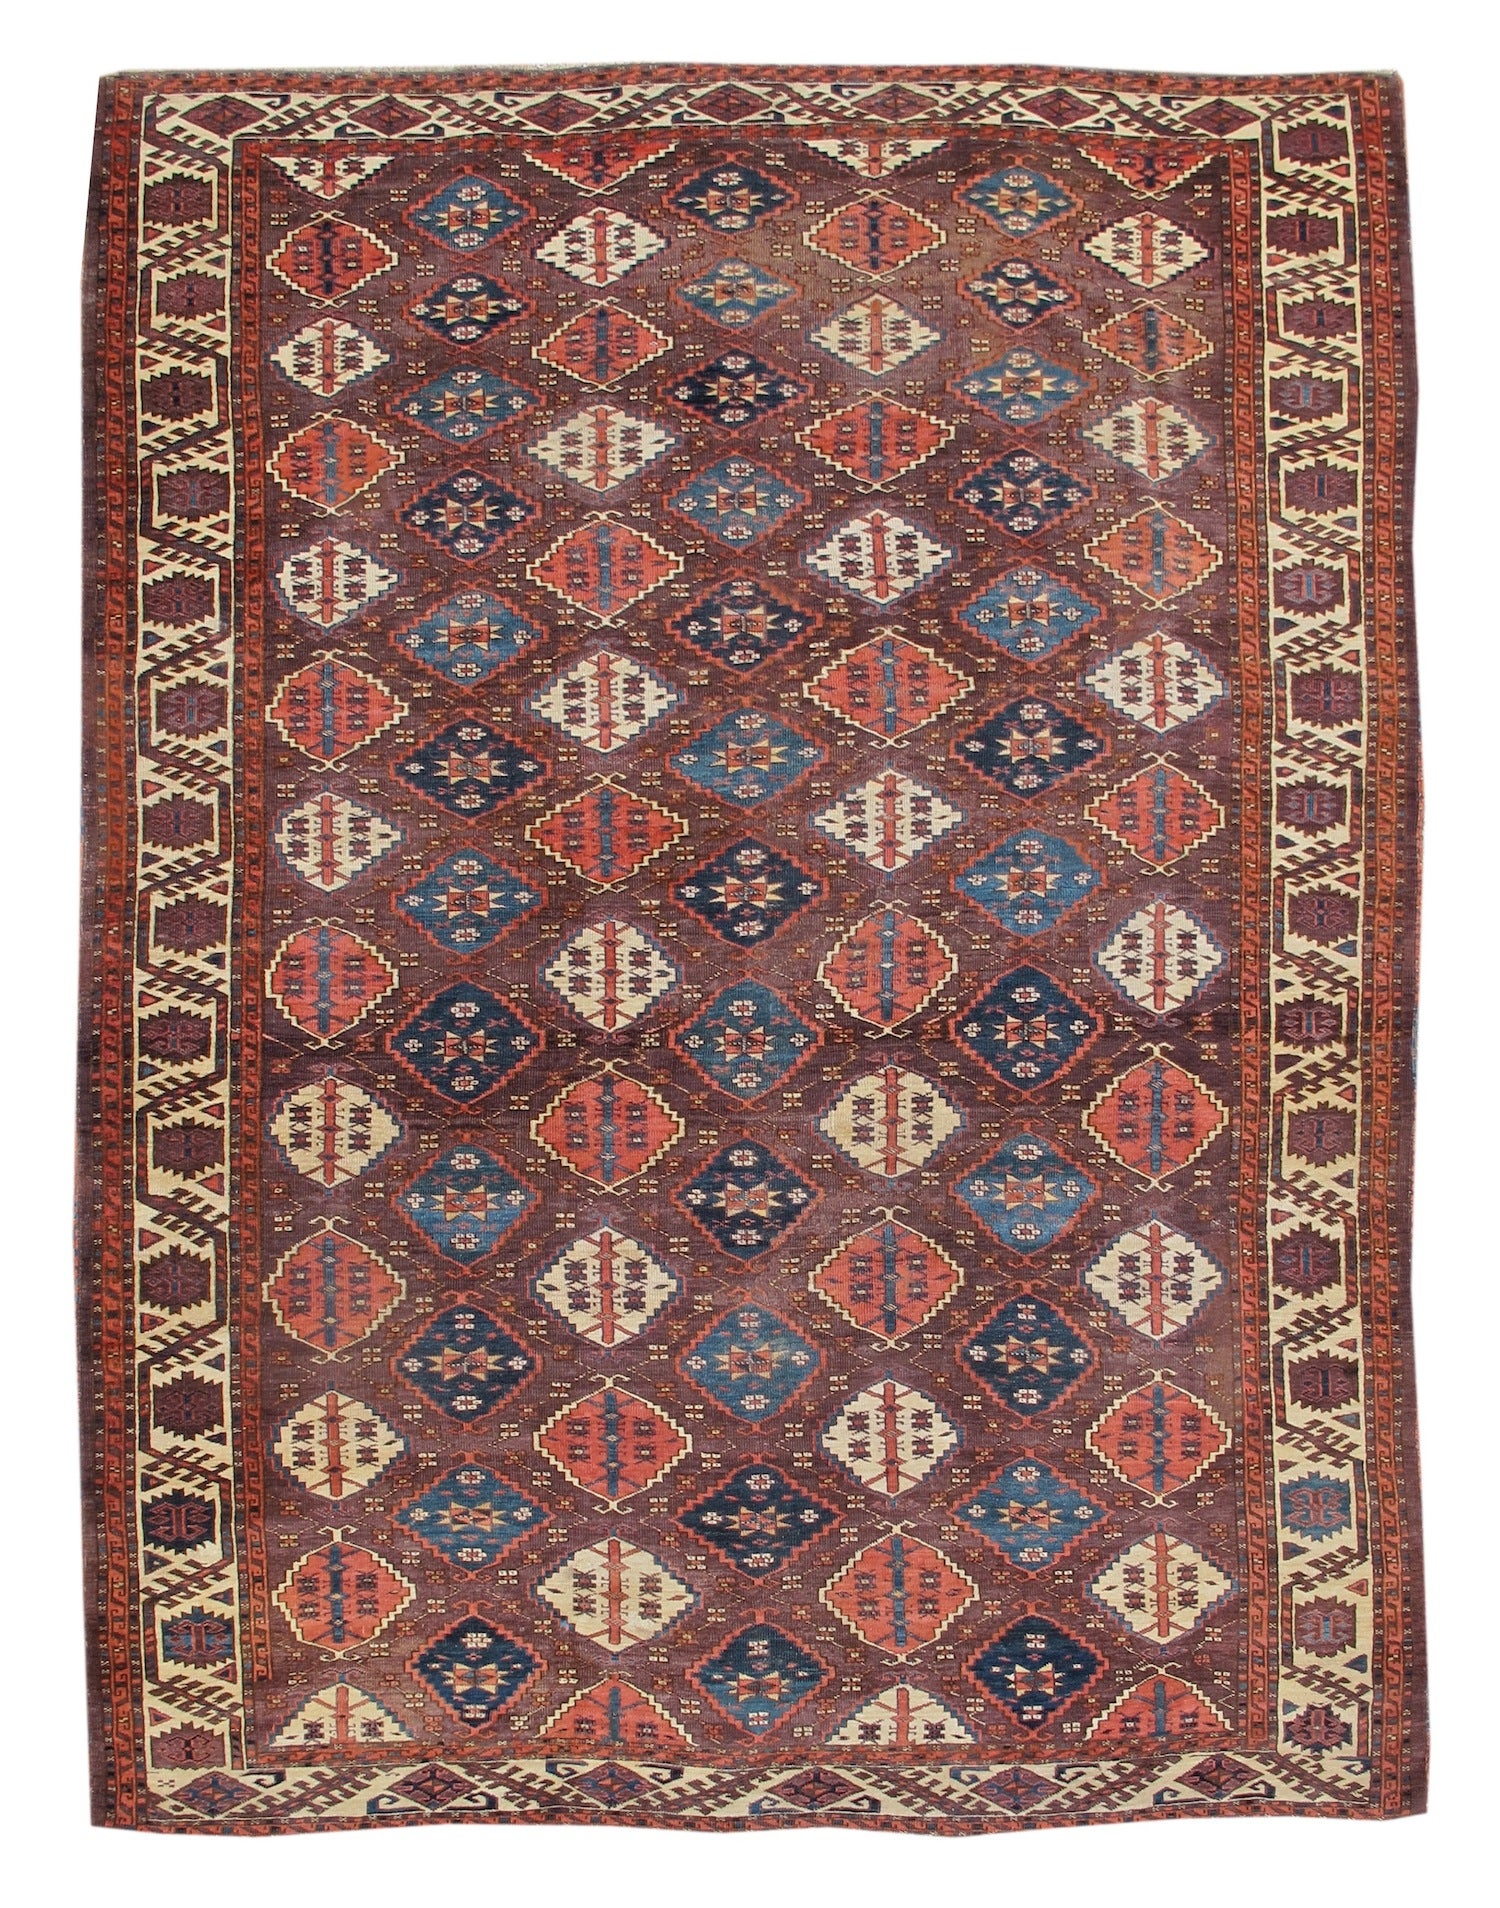 Roter Chodor- Main-Teppich aus der Mitte des 19. Jahrhunderts